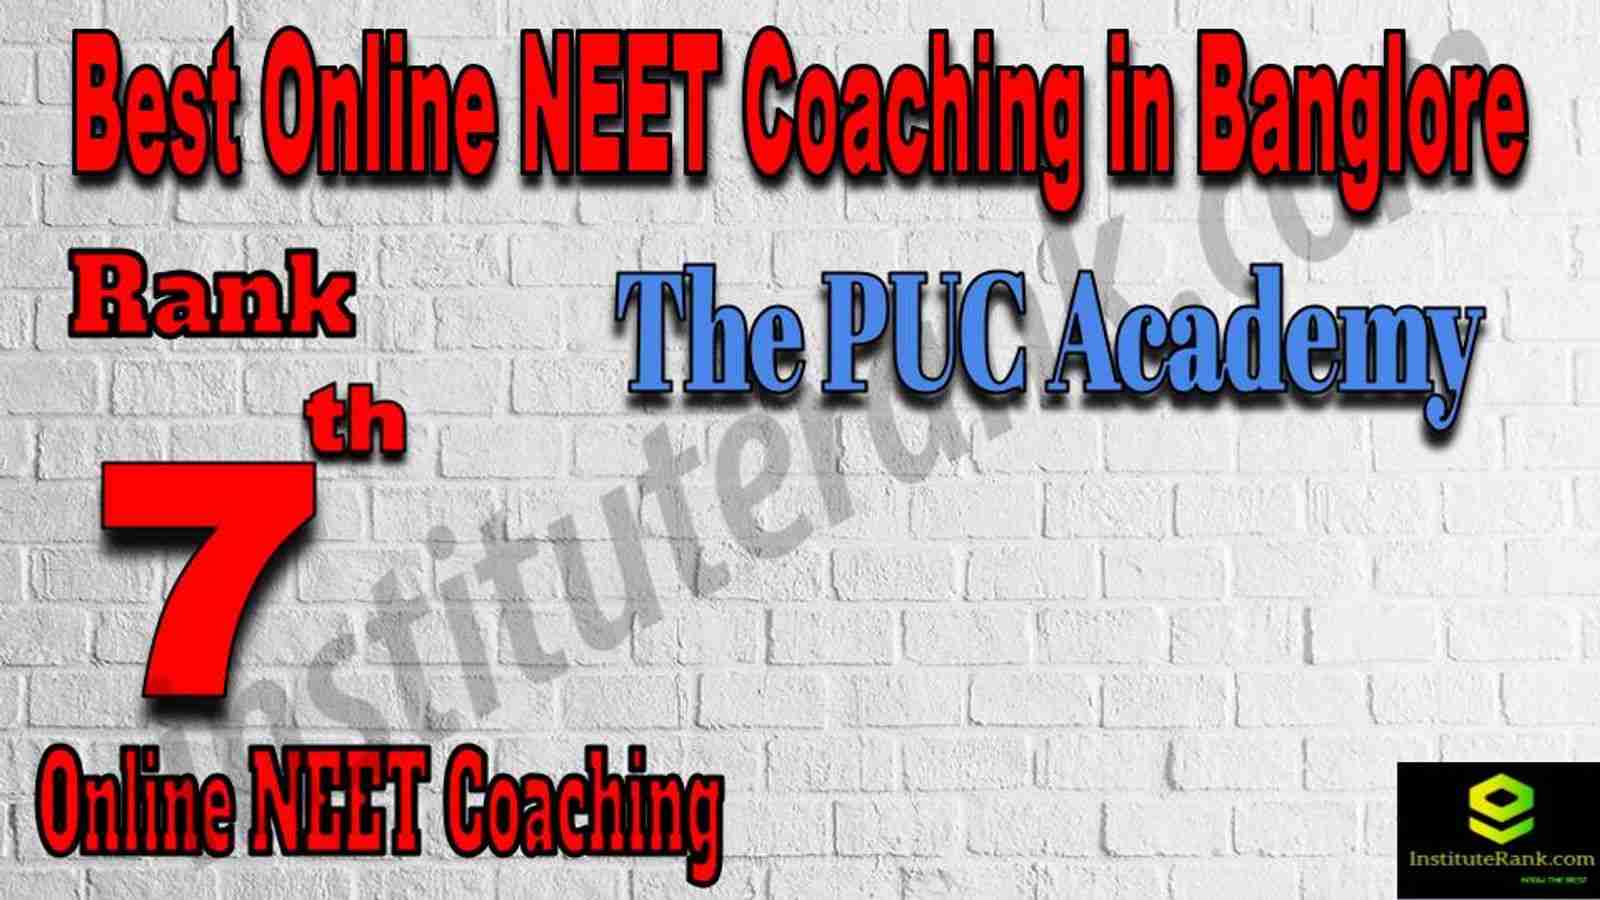 Rank 7 Best Online NEET Coaching in Banglore